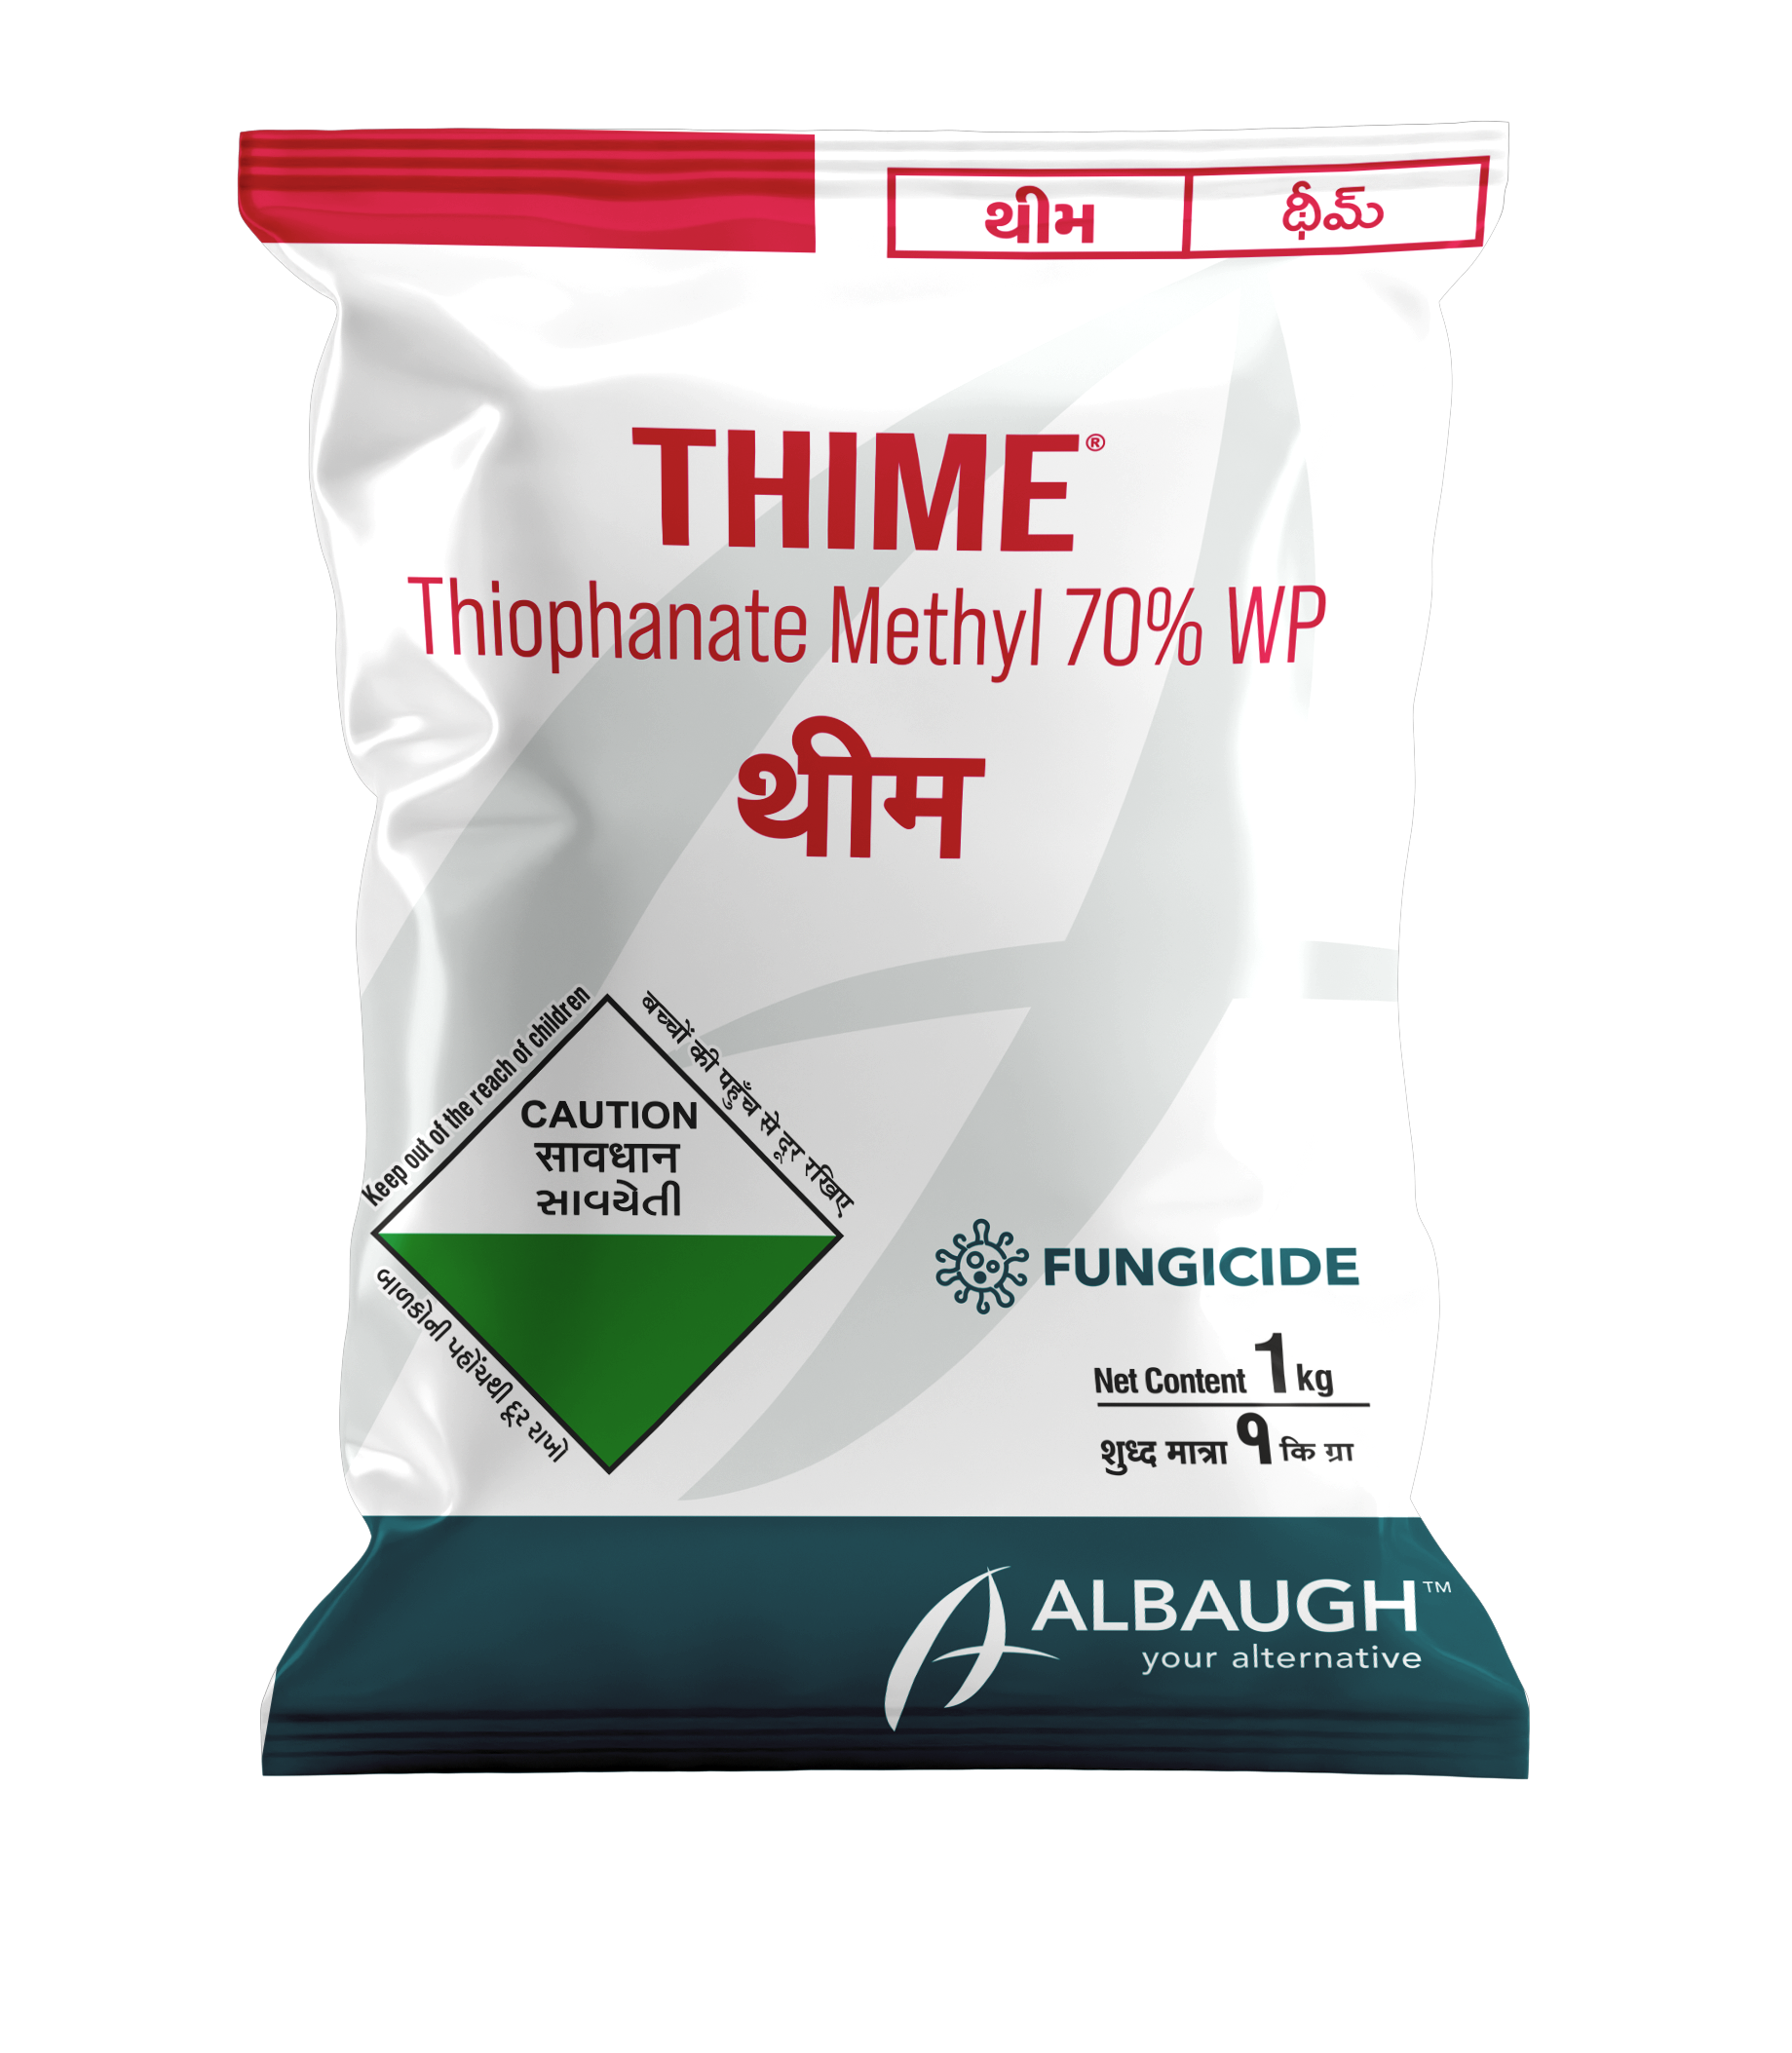 Thime: Thiophanate methyl 70% WP